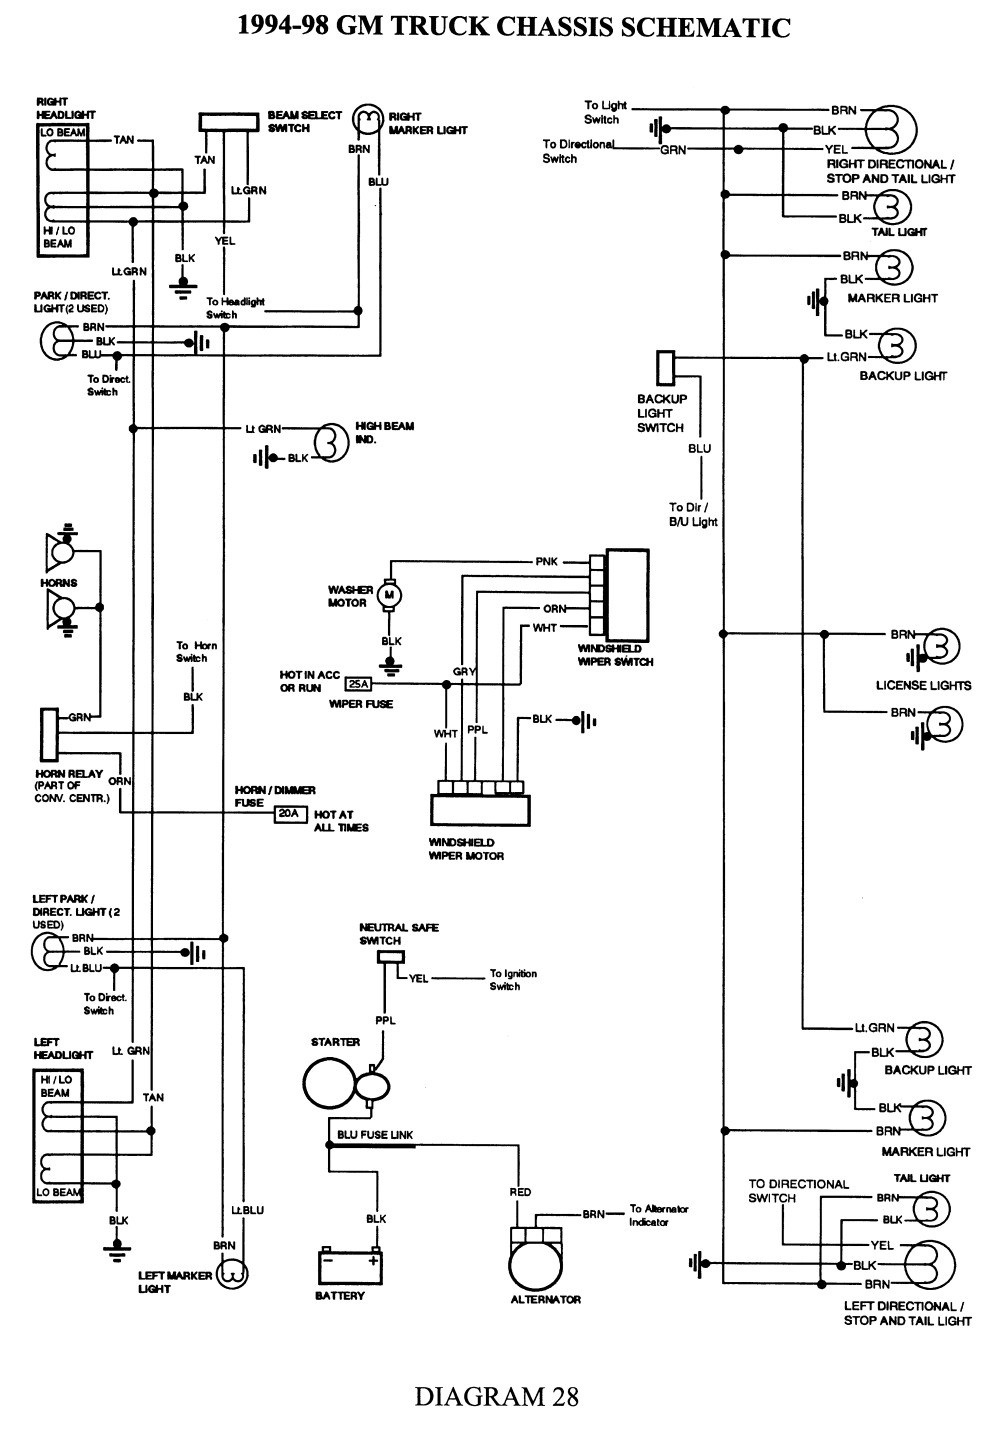 2005 chevy silverado heater wiring diagram wire center u2022 rh cinemavf co 1989 Chevy 1500 Wiring Diagram 1993 Chevy 1500 Wiring Diagram